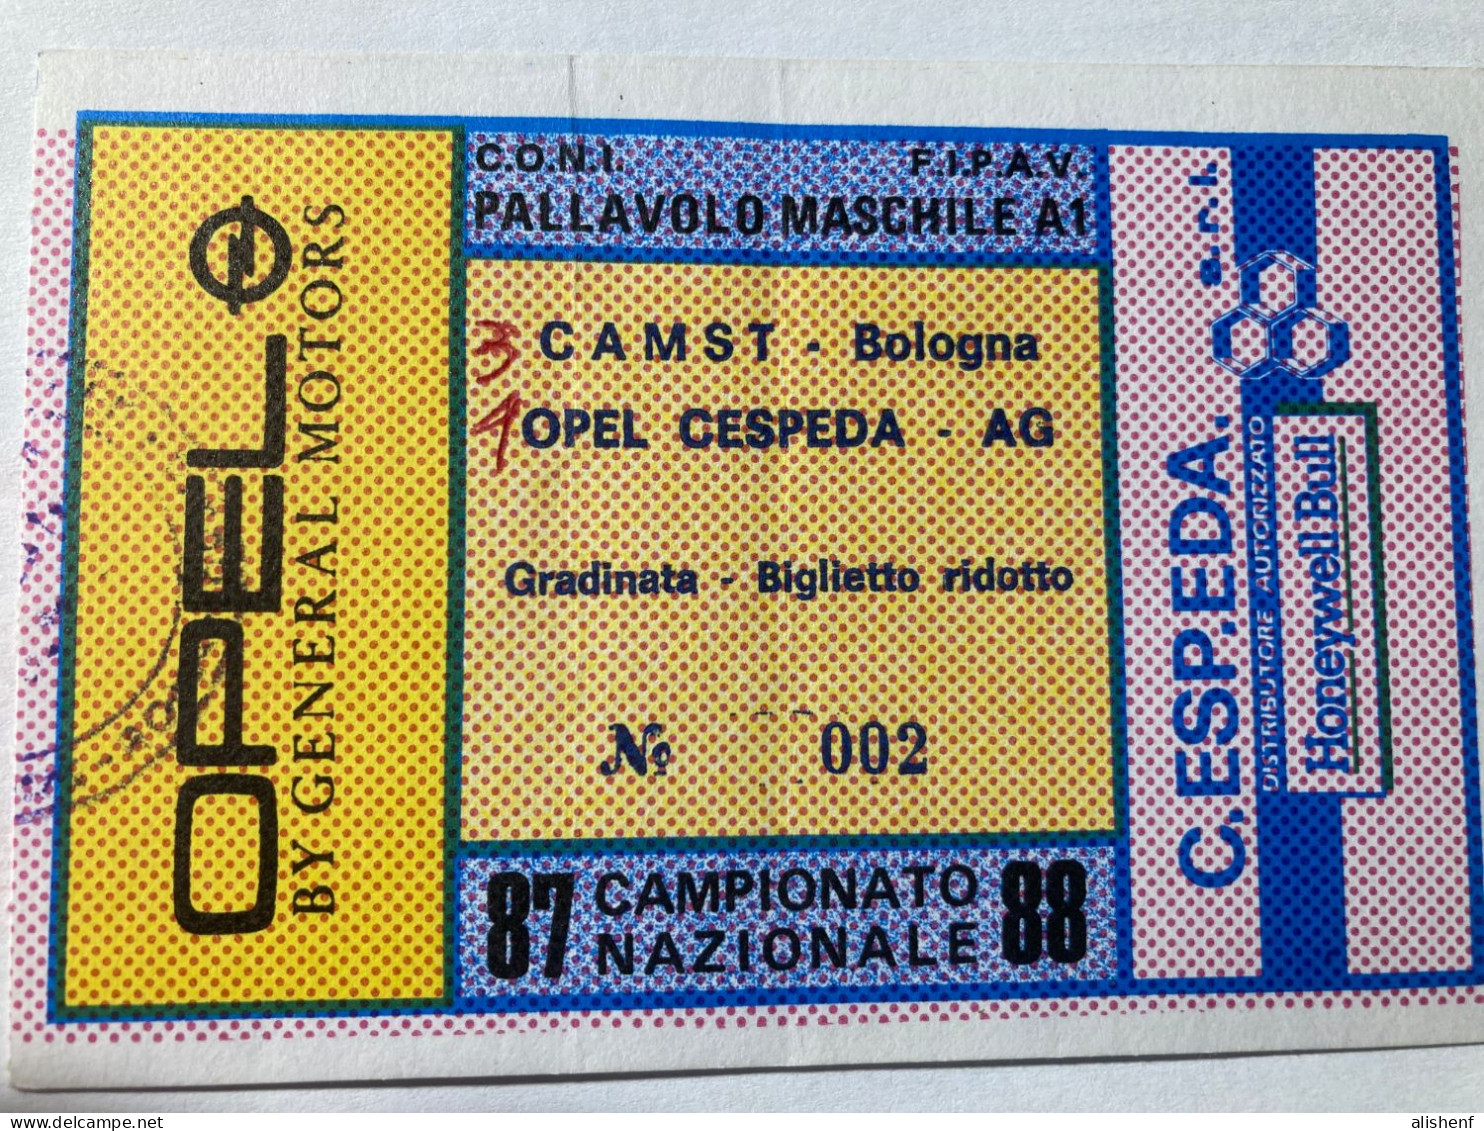 Biglietto Pallavolo Maschile A1 Opel Cespeda Agrigento CAMST Bologna Campionato 1987-88 - Toegangskaarten